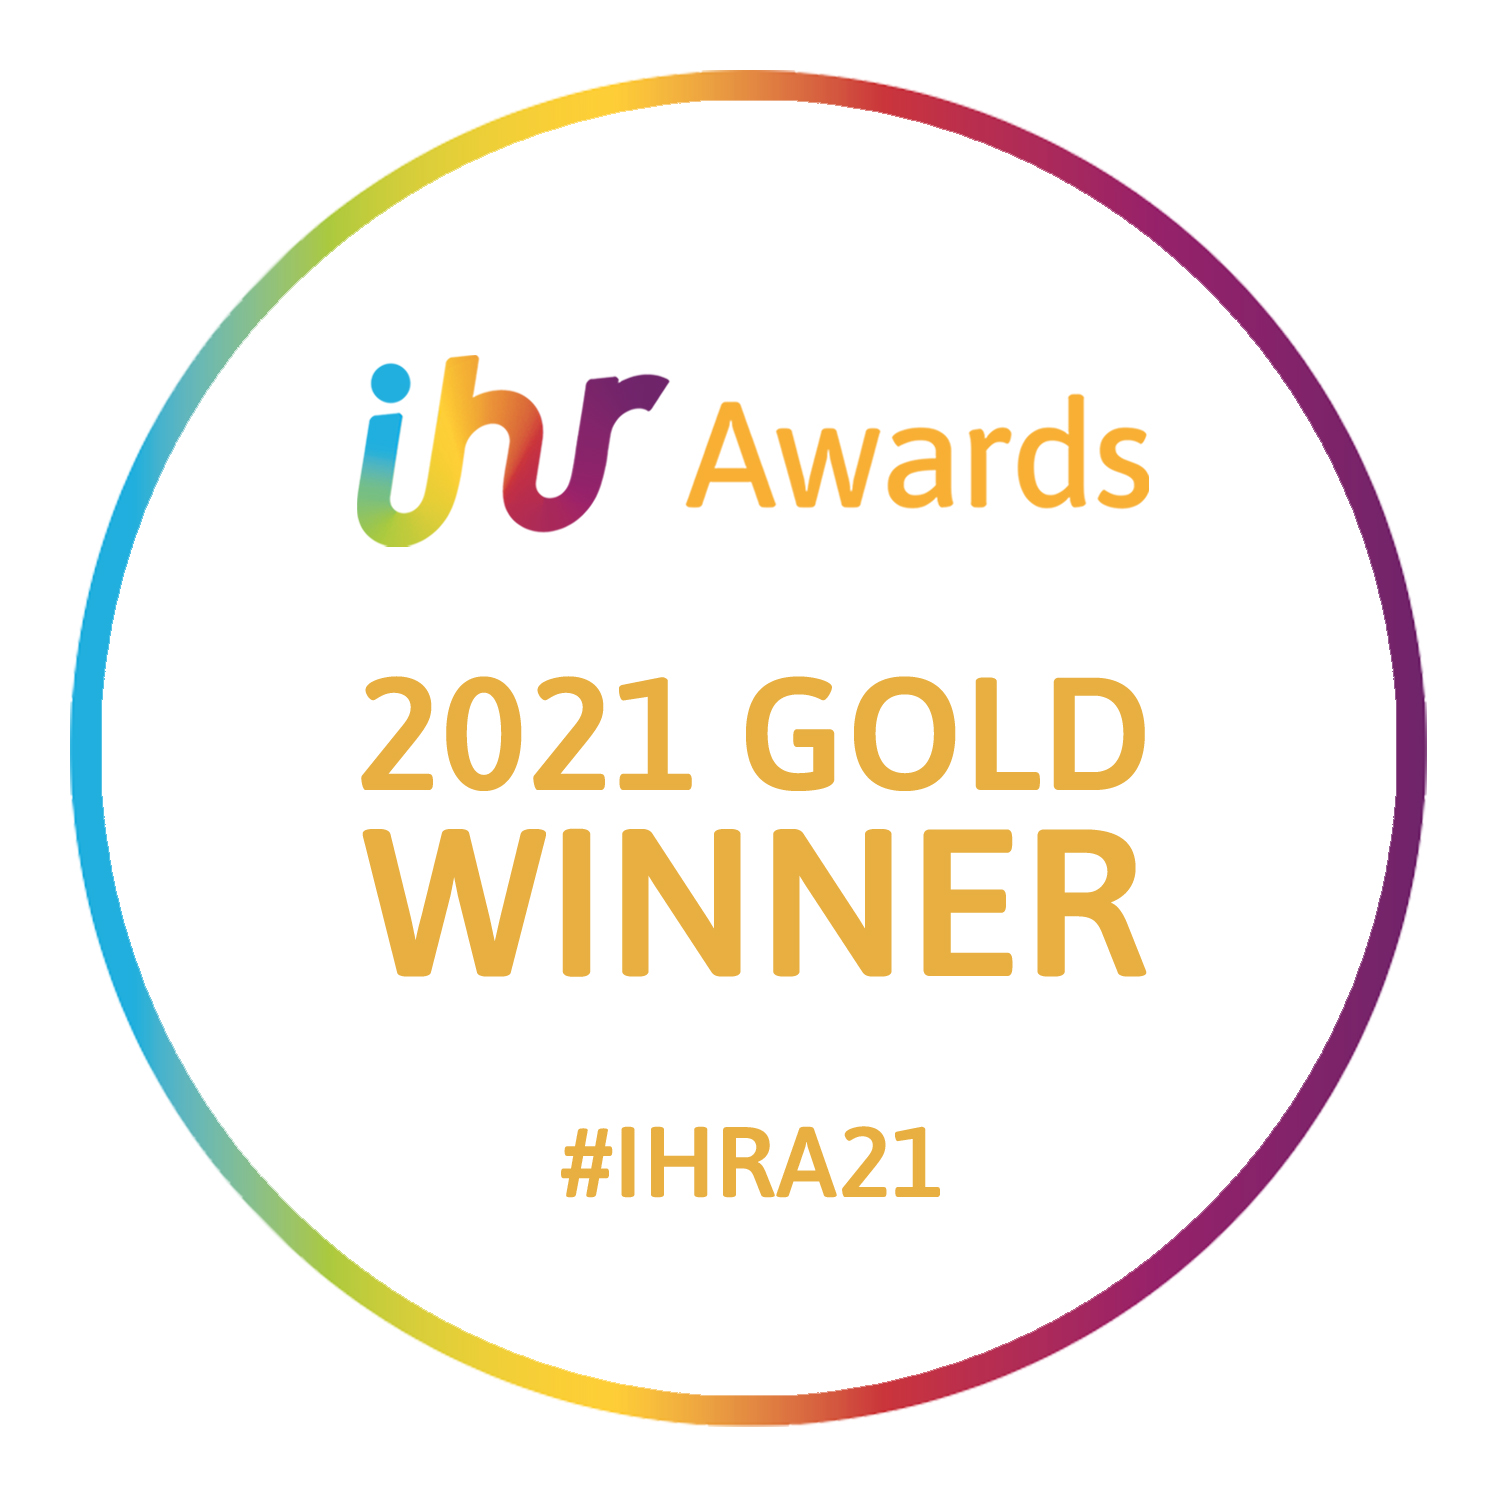 Awards 2021 Gold Winner Circle Orange